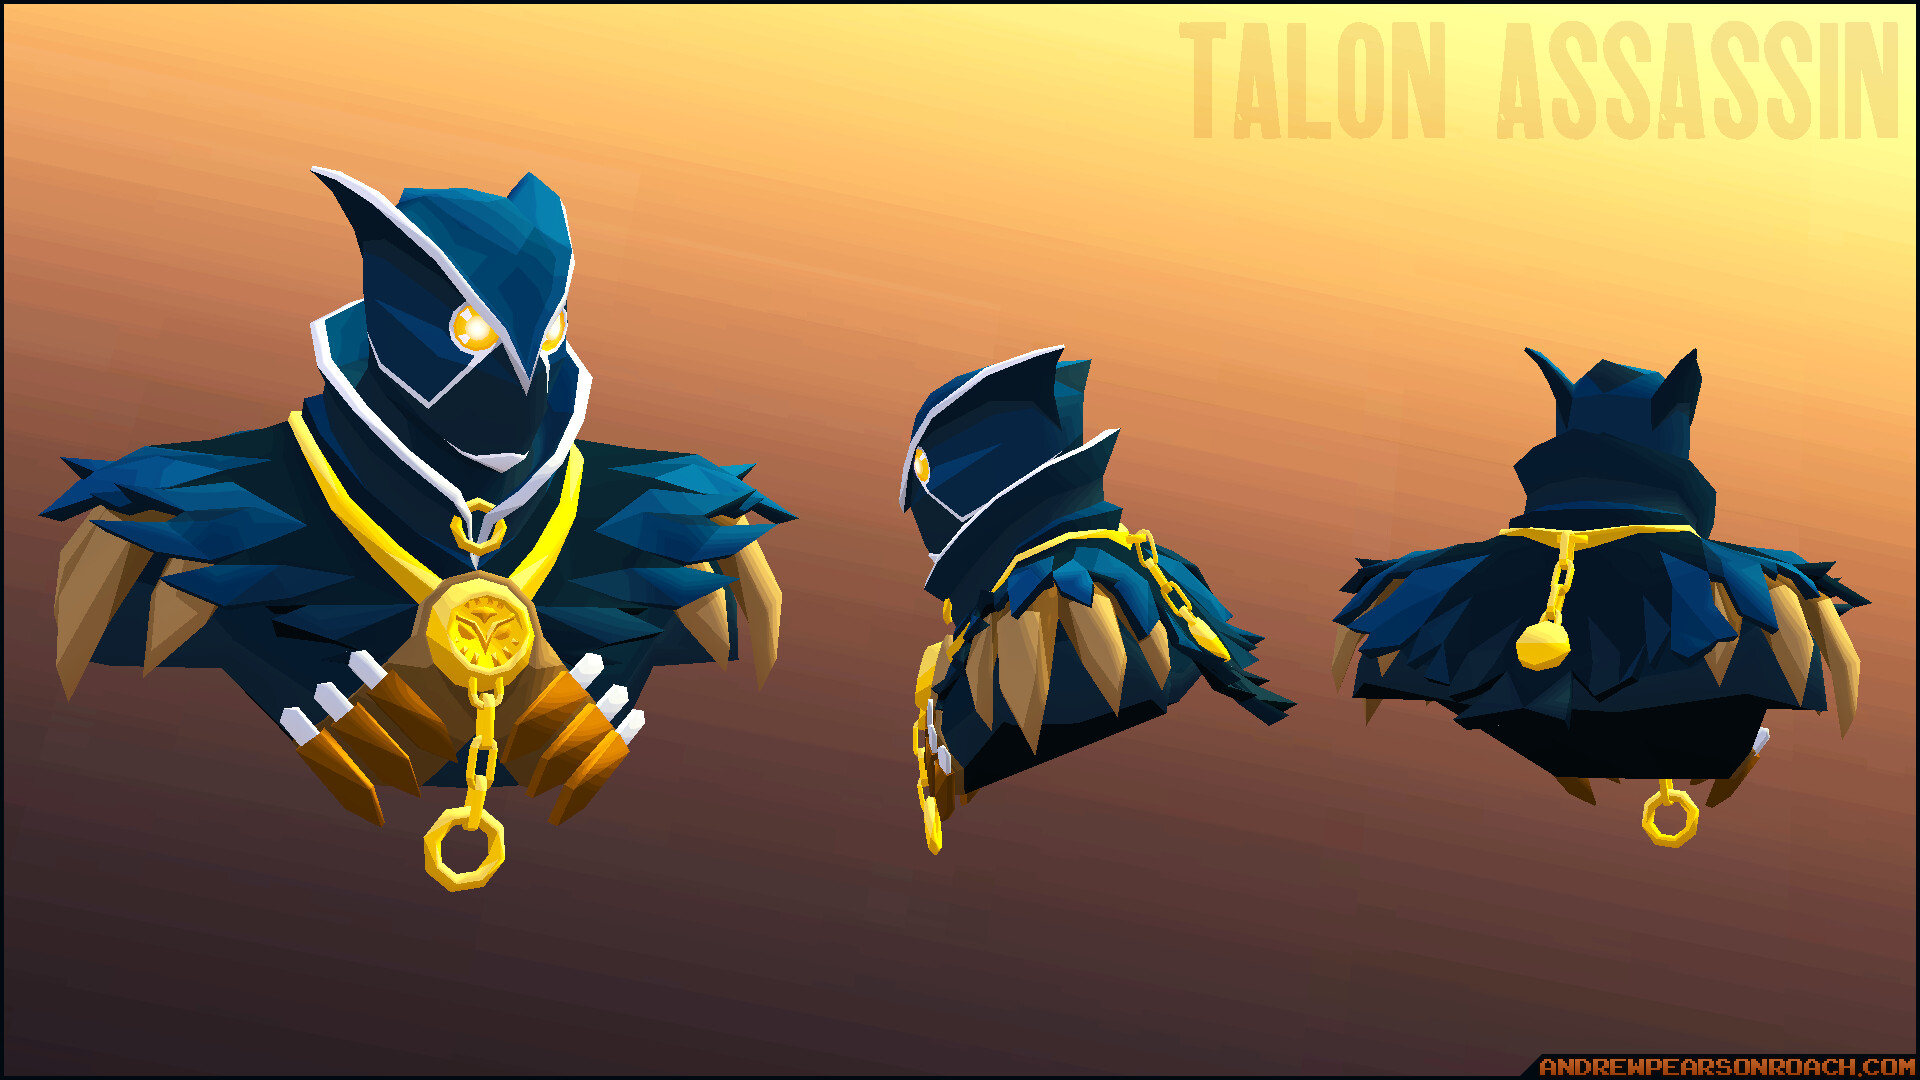 Atualização dos Assassinos - Talon on Behance